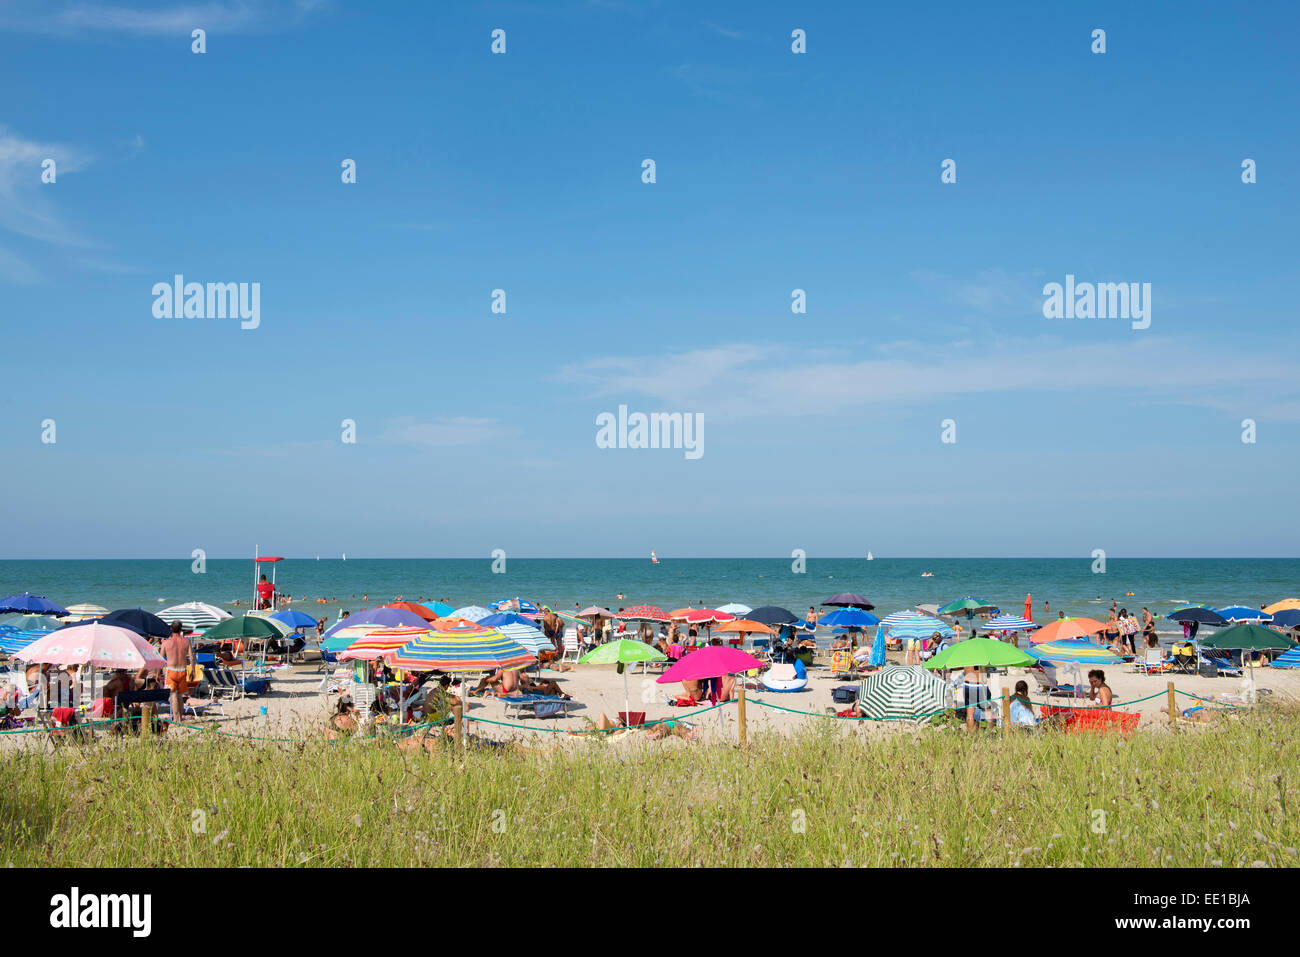 Mare e una spiaggia di sabbia fine attrezzata con ombrelloni, erba nella parte anteriore, Senigallia, provincia di Ancona, Marche, Italia Foto Stock